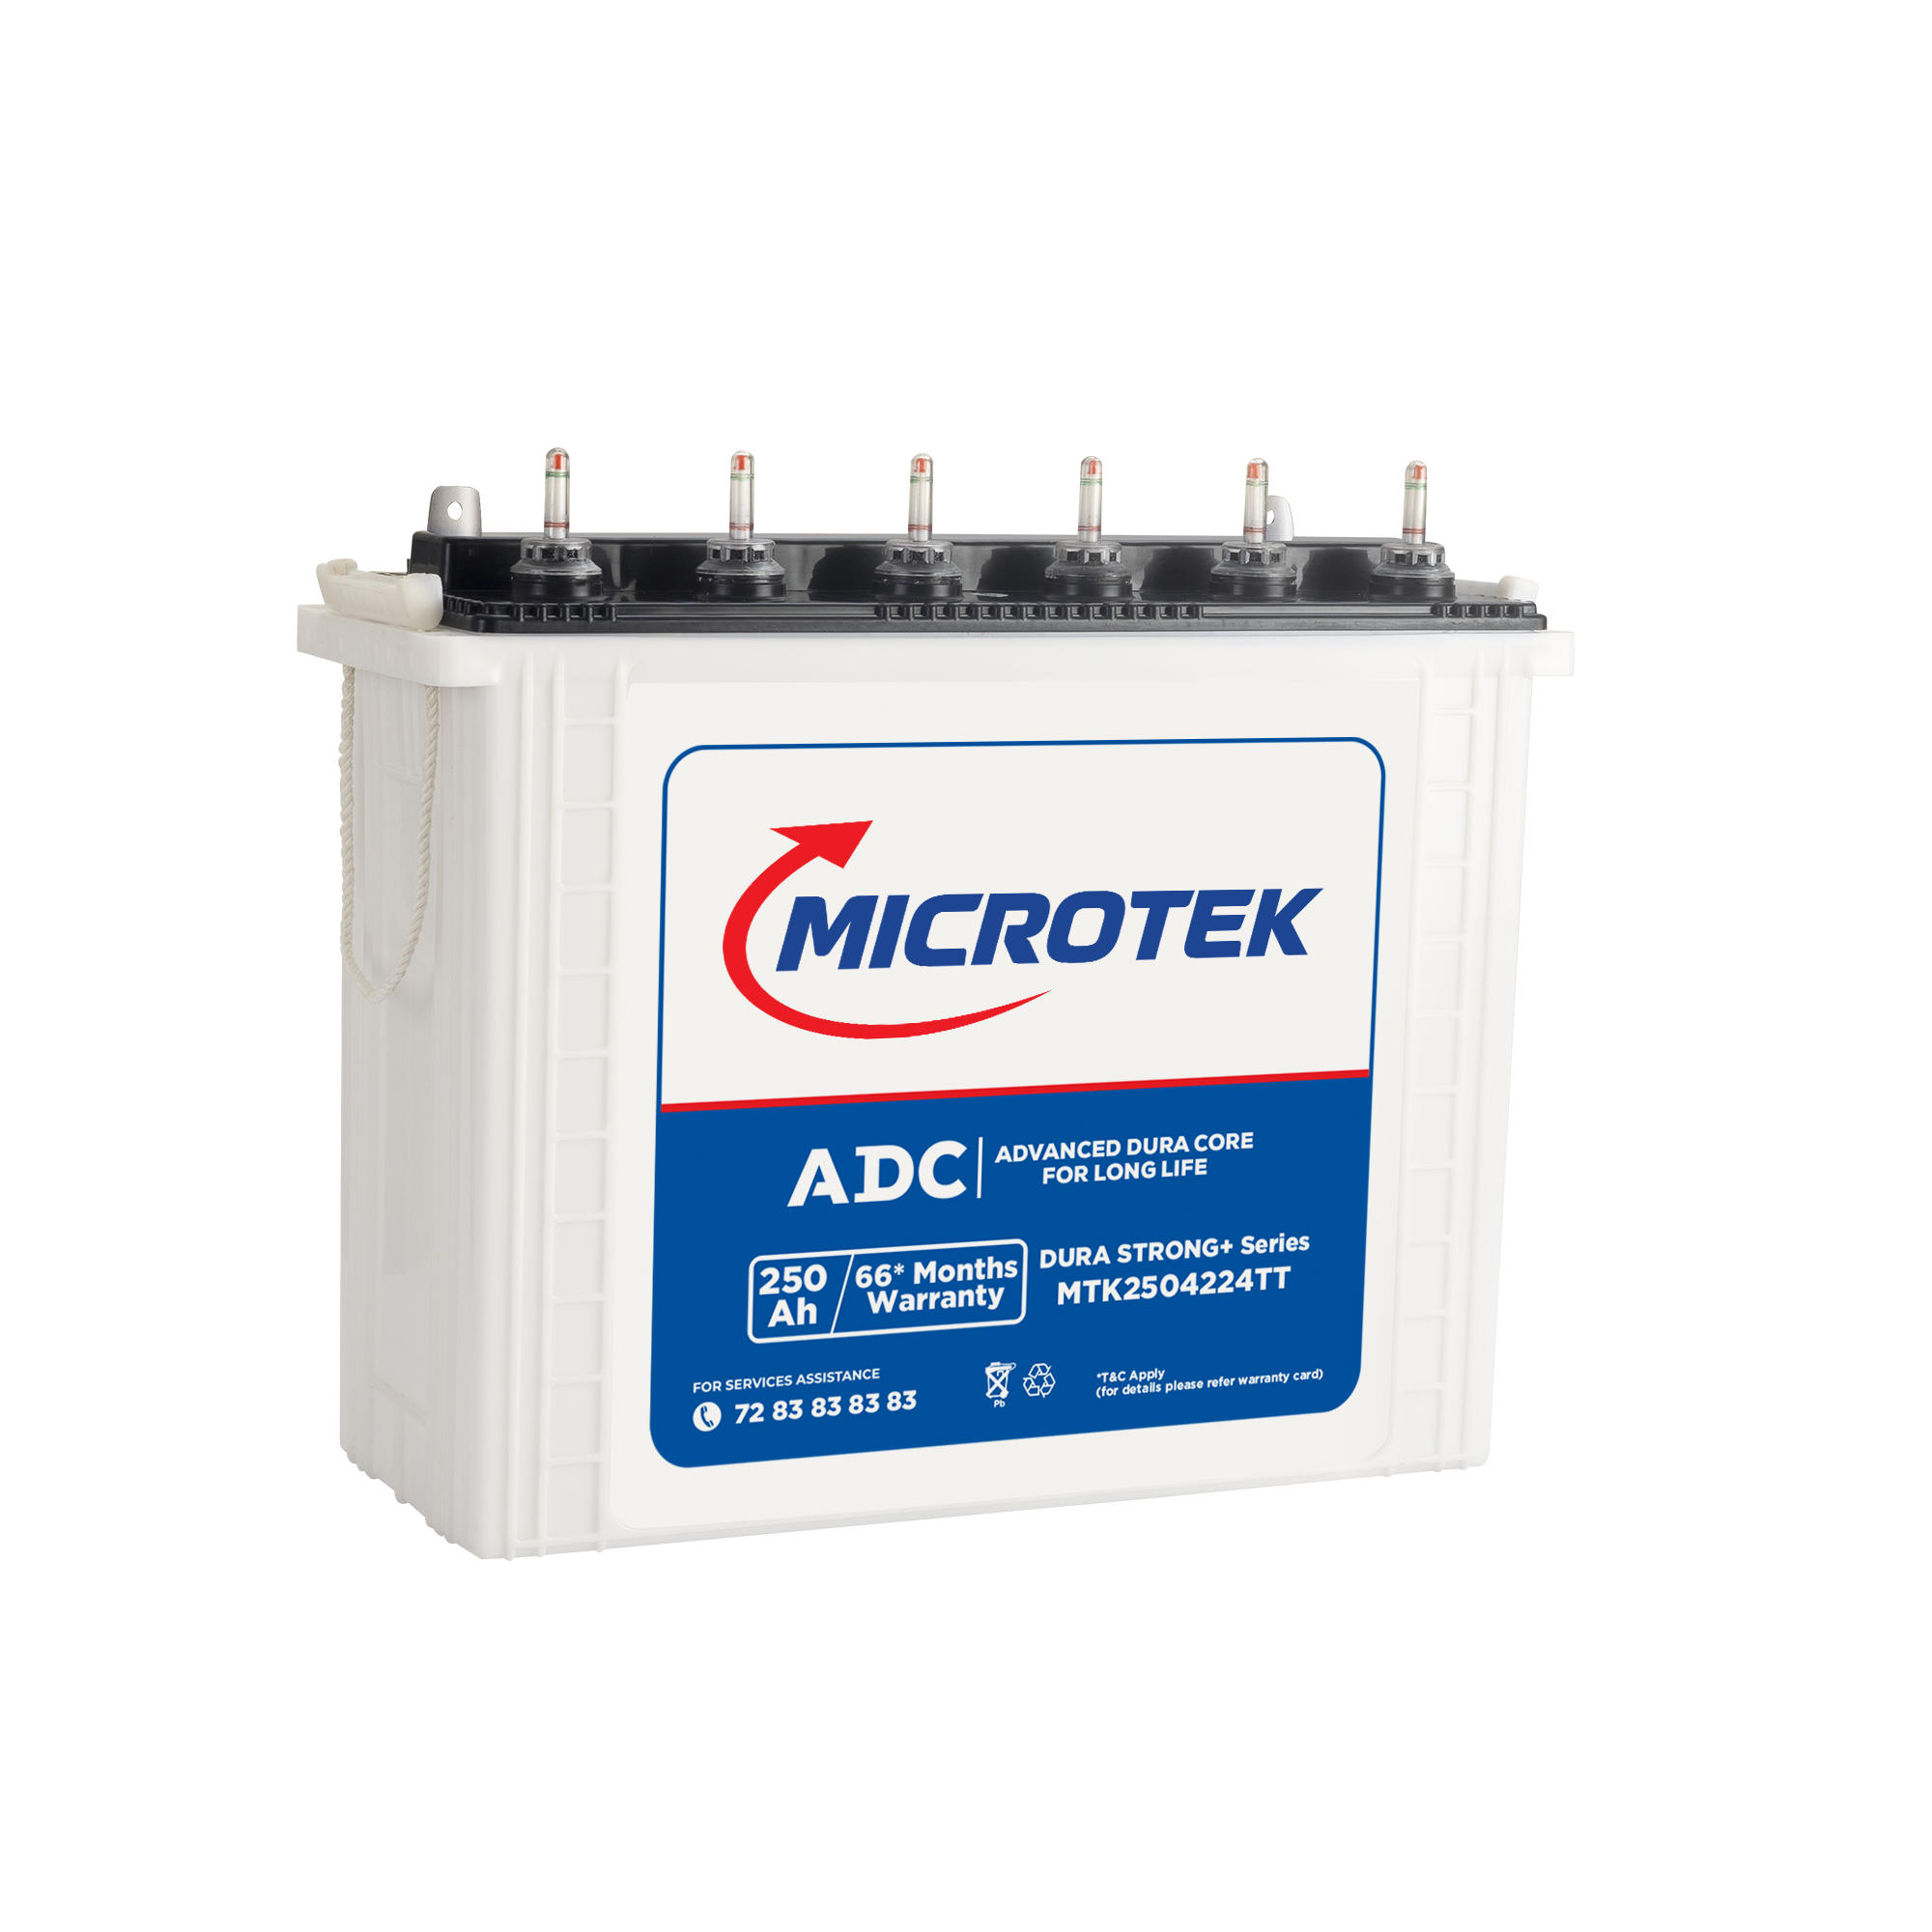 Microtek Dura STRONG+ MTK2504224TT 250Ah/12V